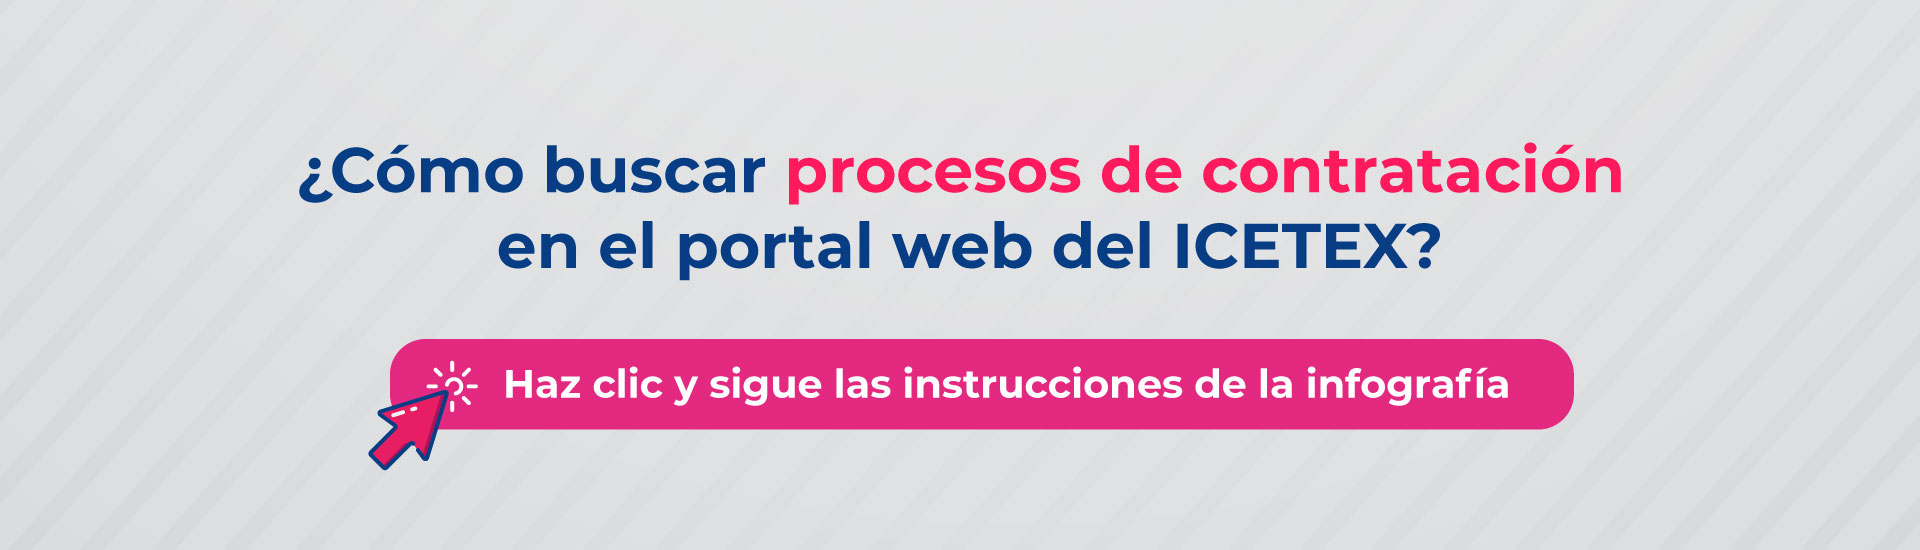 Cómo buscar proceso de contratación en el portal web del ICETEX haz clic y sigue las instrucciones de la infografía